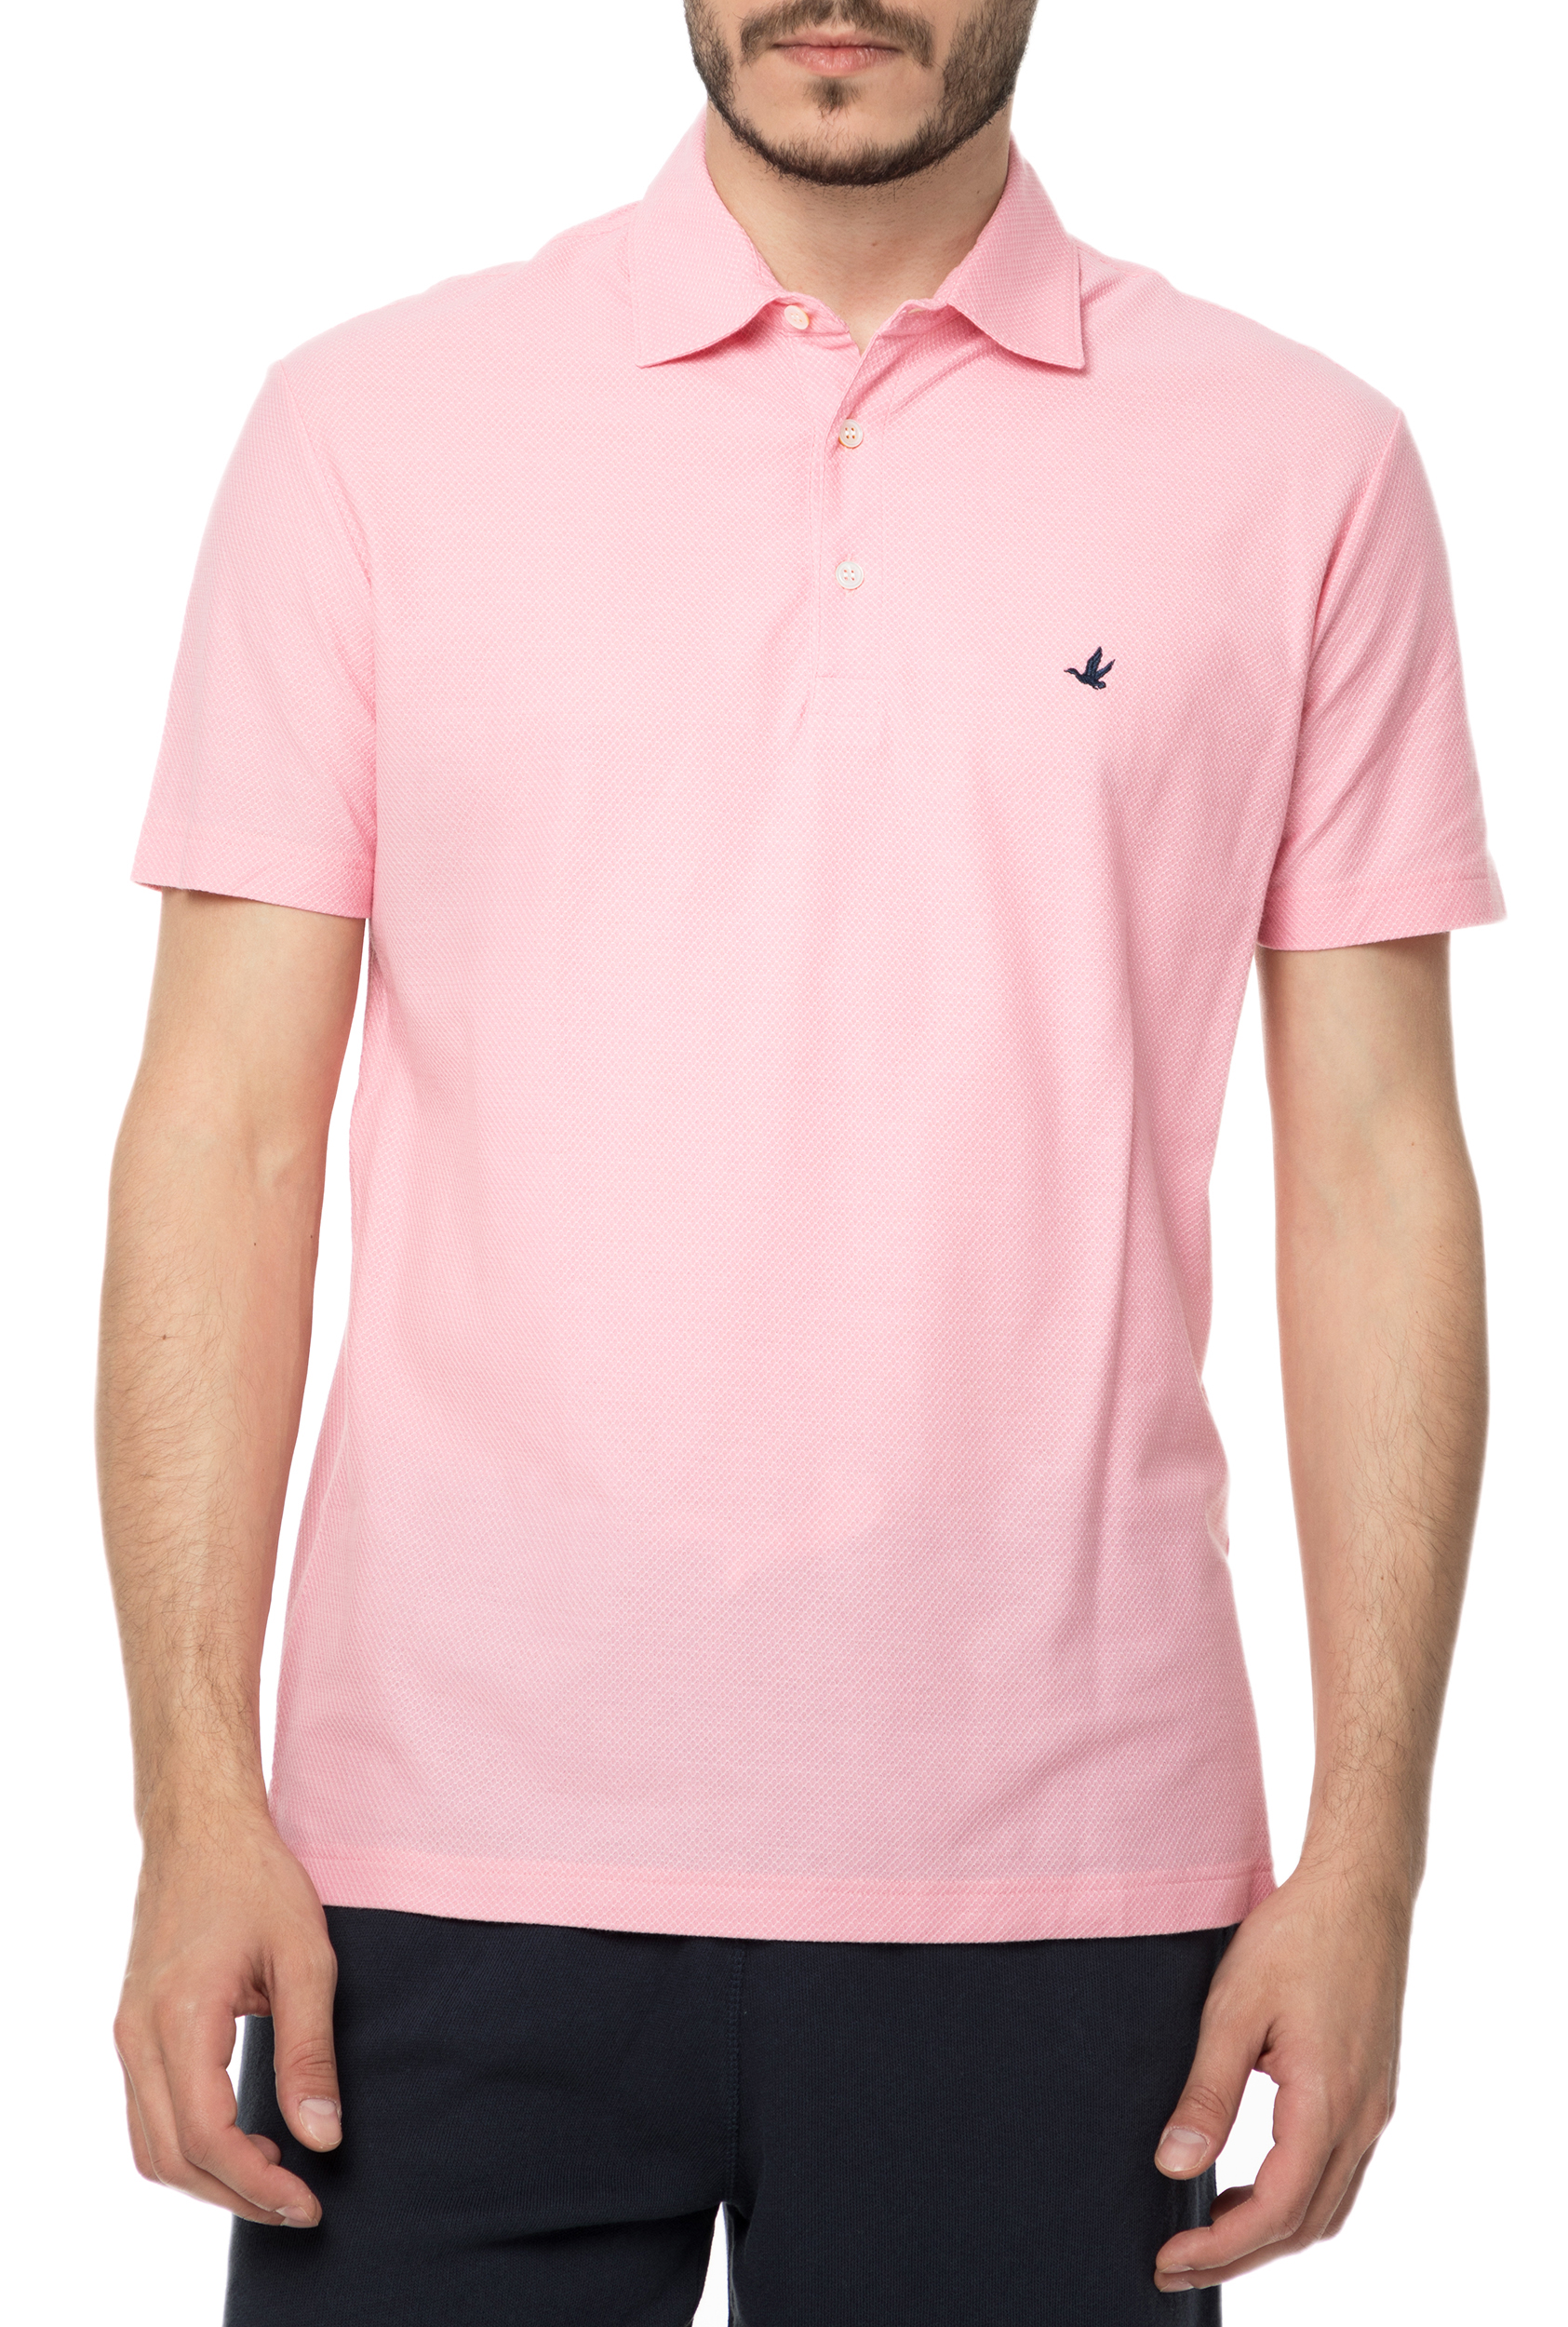 Ανδρικά/Ρούχα/Μπλούζες/Πόλο BROOKSFIELD - Ανδρική πόλο μπλούζα BROOKSFIELD ροζ